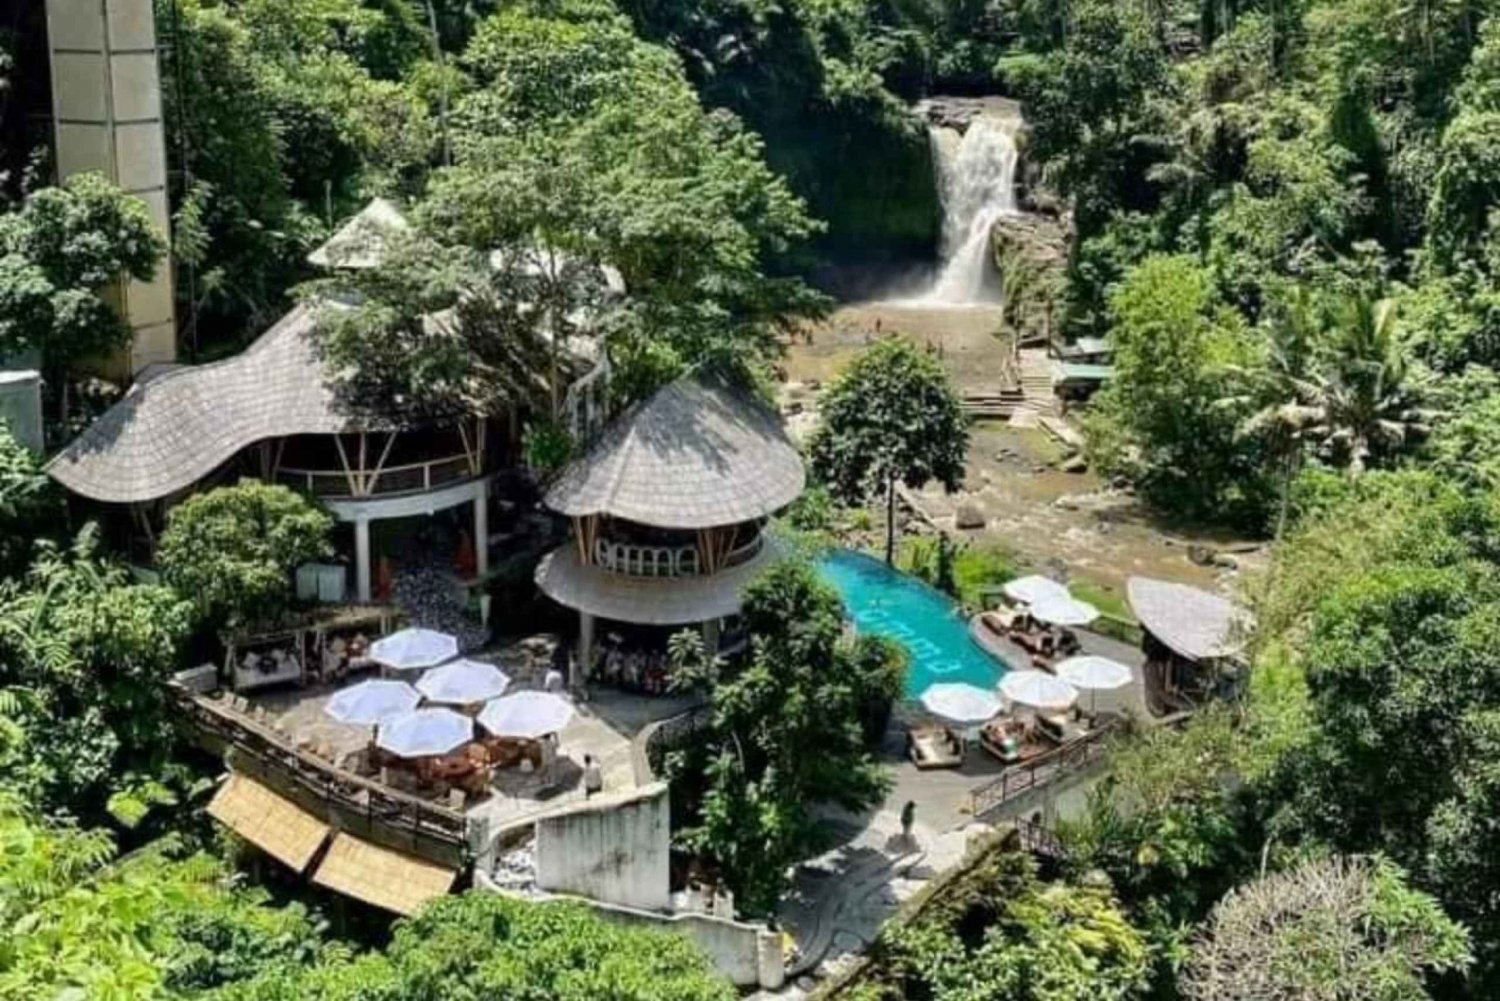 Bali : Best of 3 Ubud Hidden Waterfalls